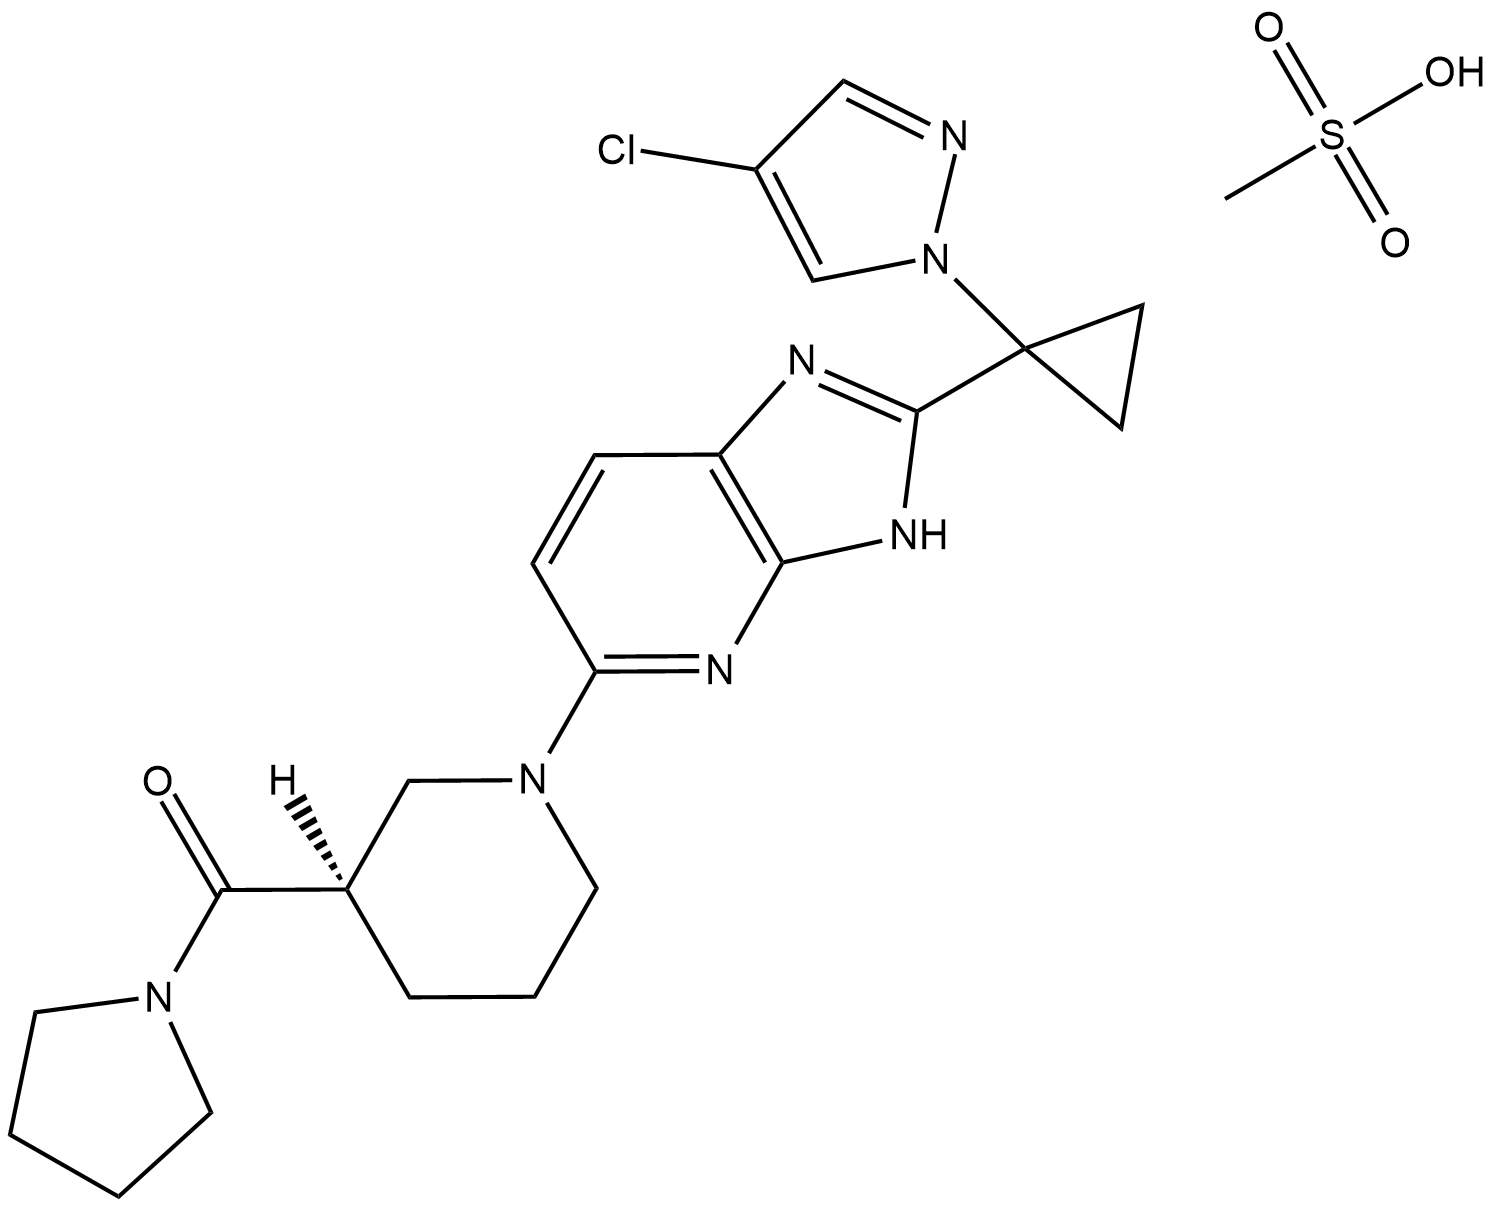 PF-06424439 التركيب الكيميائي